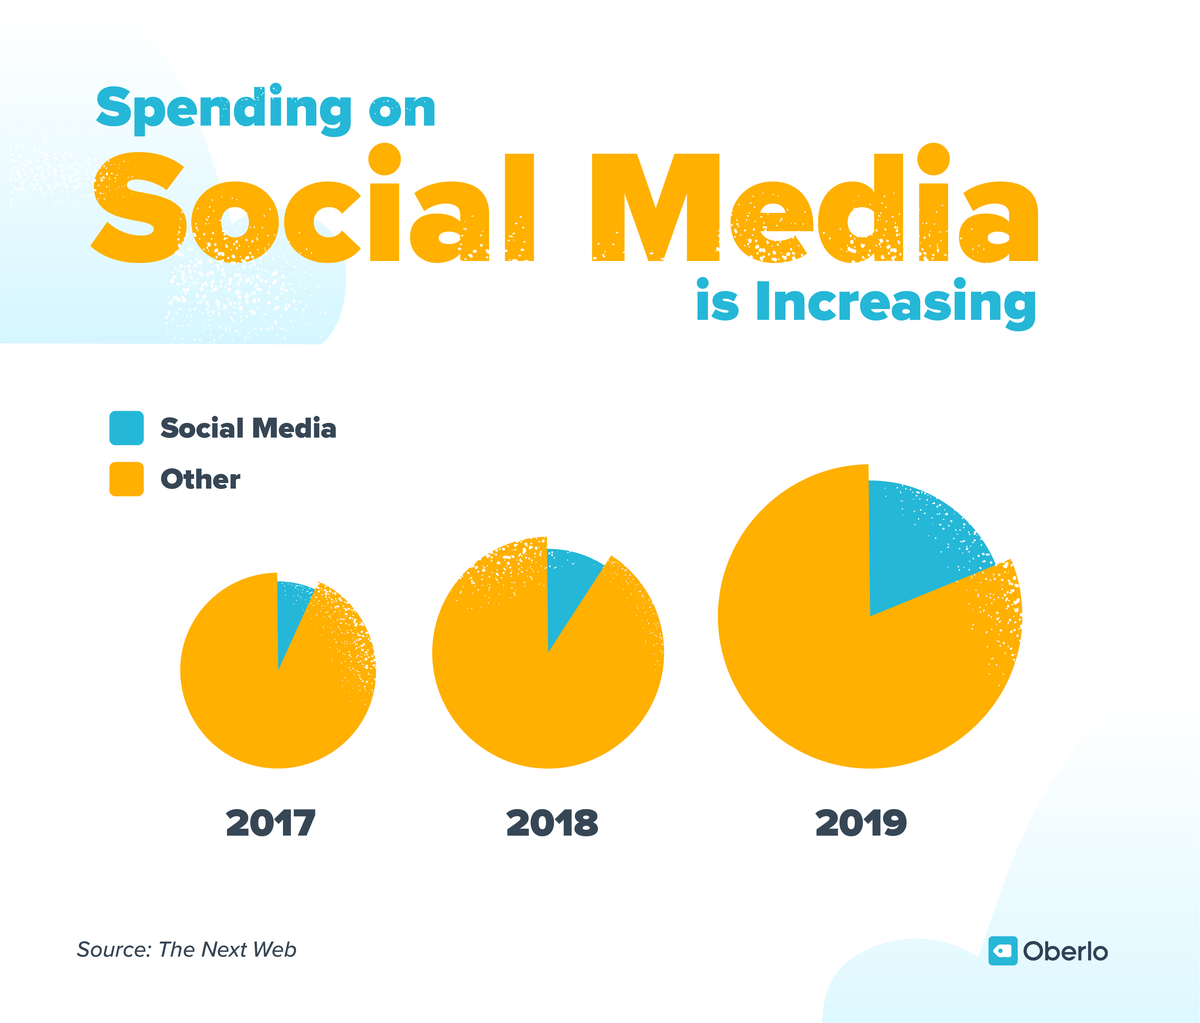 ההוצאות על שיווק ברשתות חברתיות גדלות מדי שנה